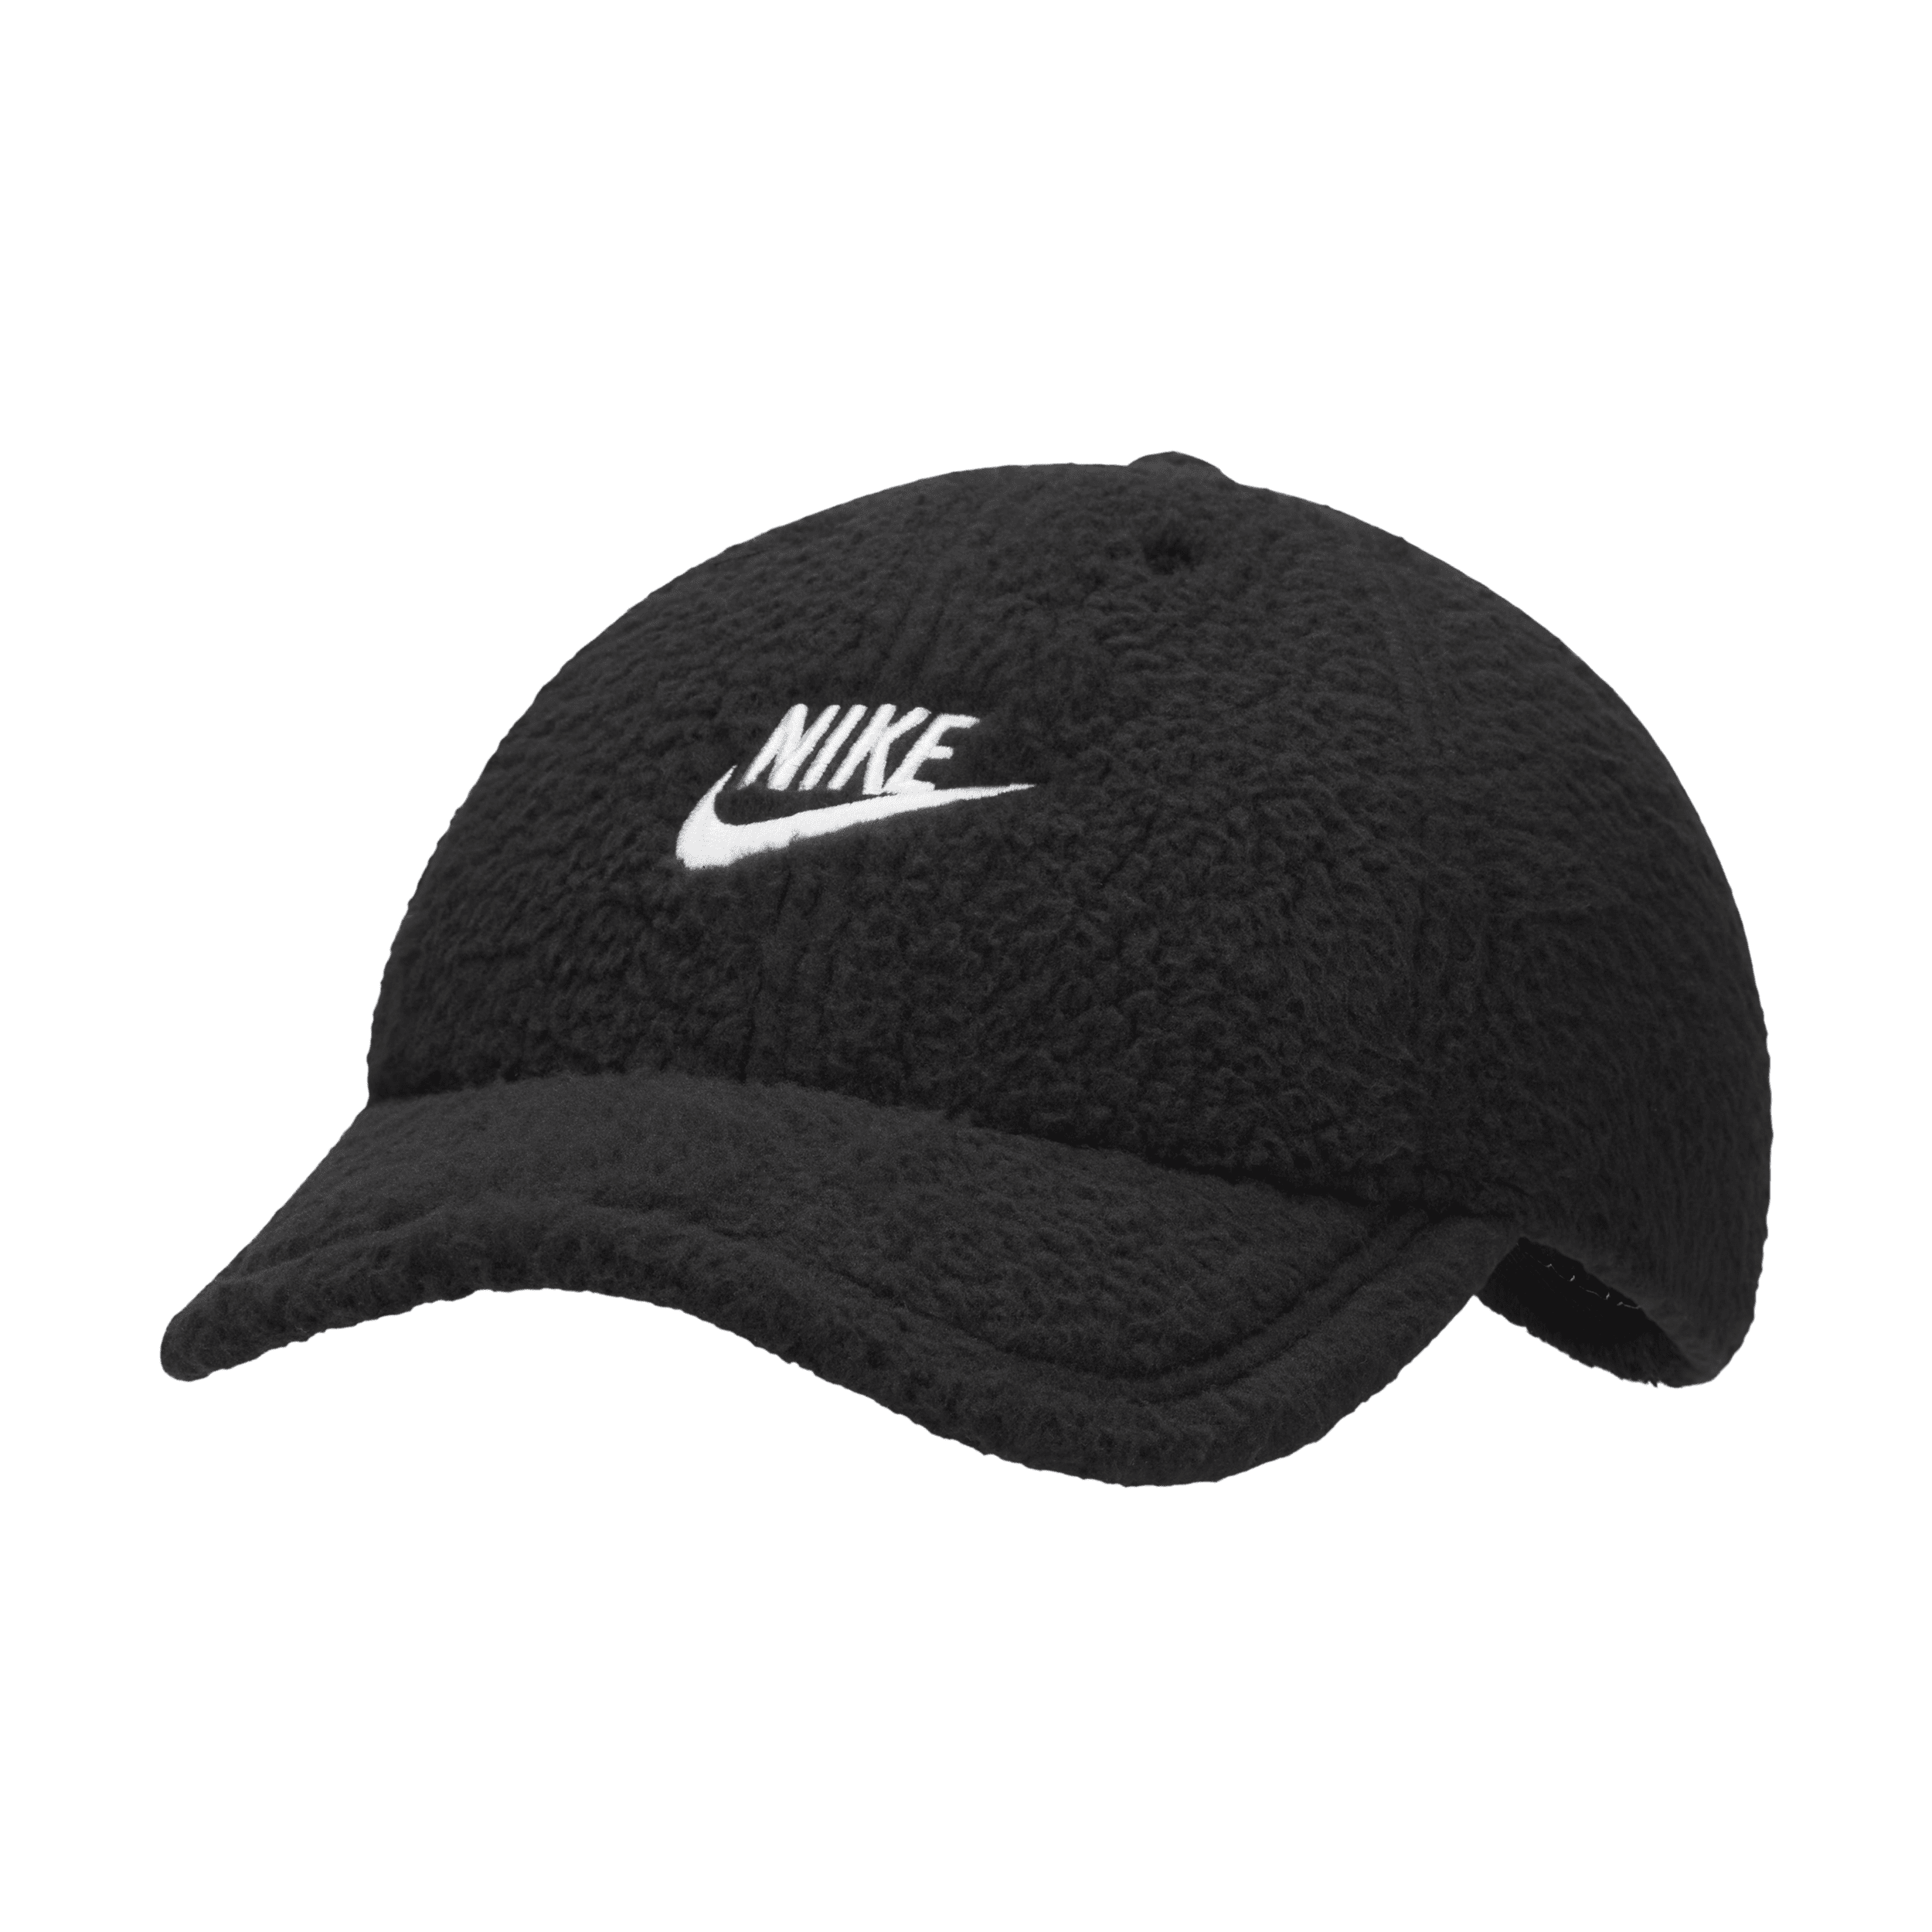 Nike Unisex Club Cap Unstructured Curved Bill Cap In Black